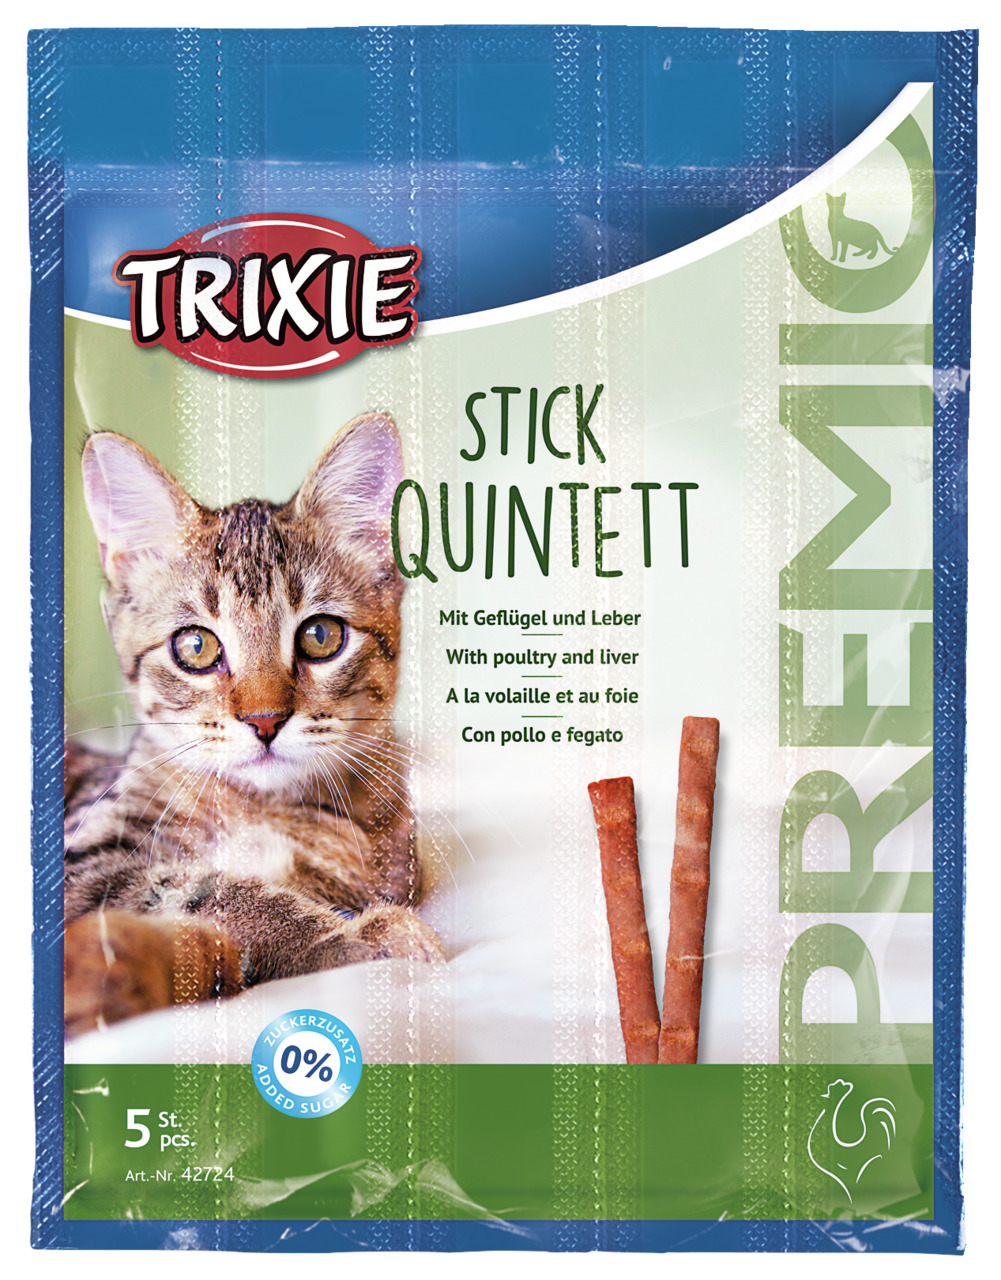 Sparpaket 2 x 5 g Trixie Premio Stick Quintett mit Geflügel und Leber Katzen Snack